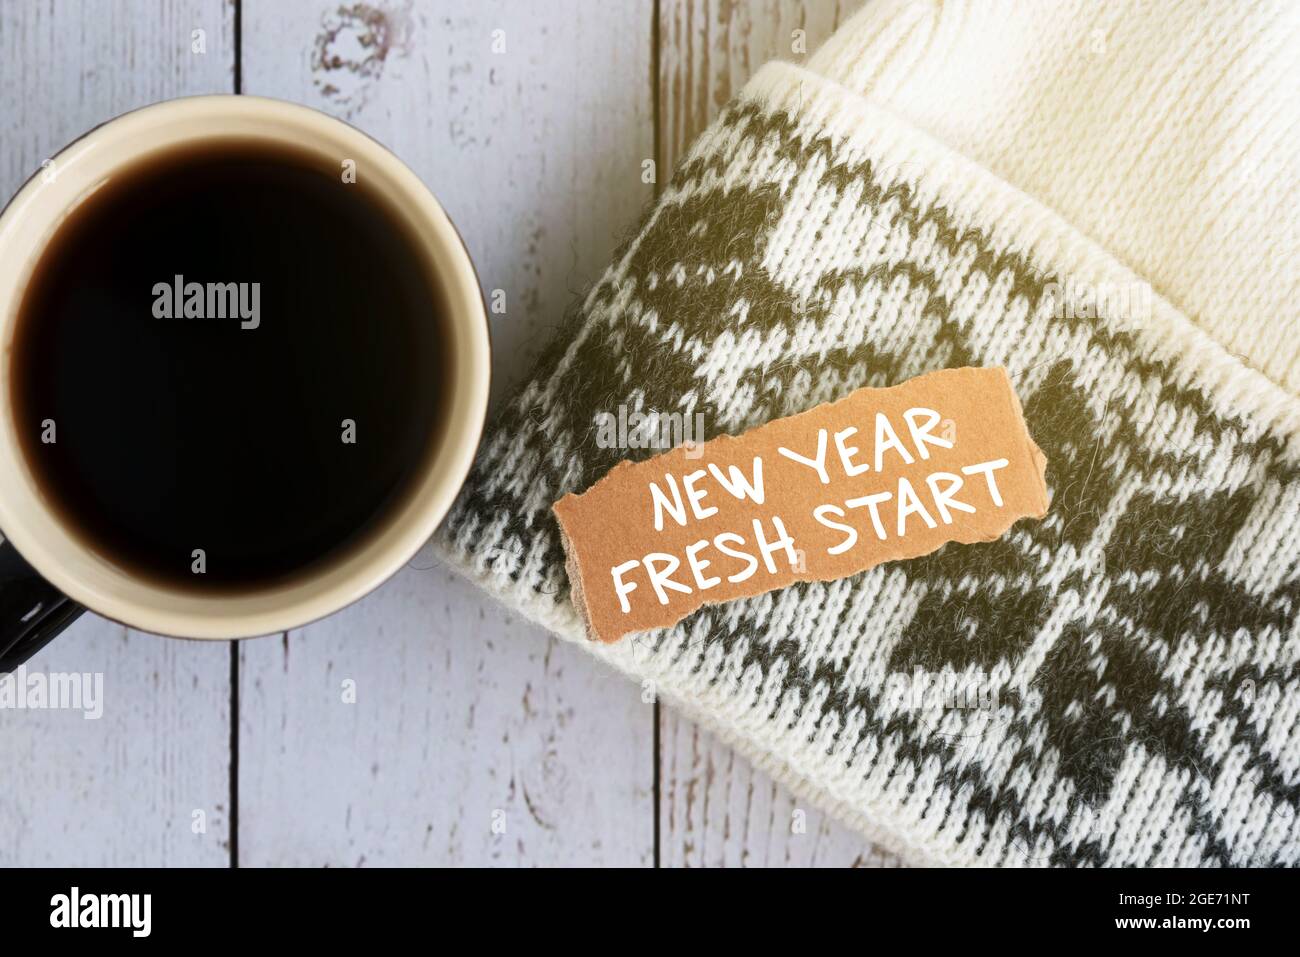 Neujahr frischer Start auf zerrissenem Papier mit einer Tasse Kaffee - Neujahrskonzept Stockfoto